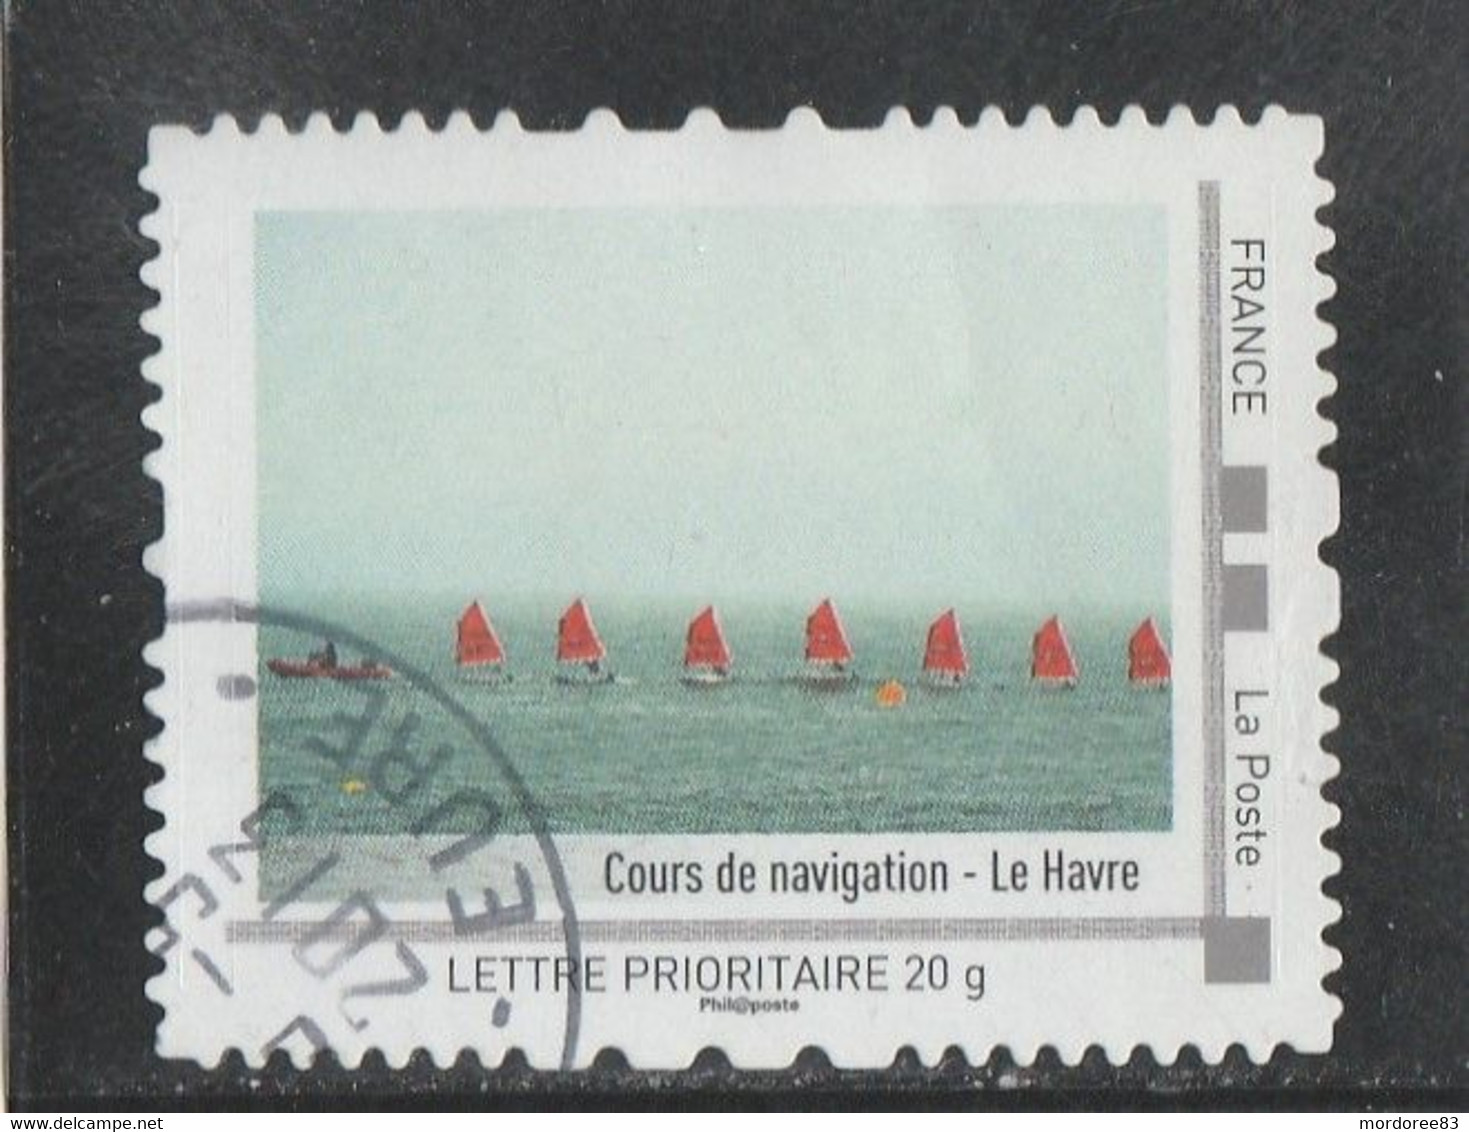 FRANCE ISSU DU COLLECTEUR HAUTE NORMANDIE 2012 - COURS DE NAVIGATION - LE HAVRE OBLITERE - Collectors